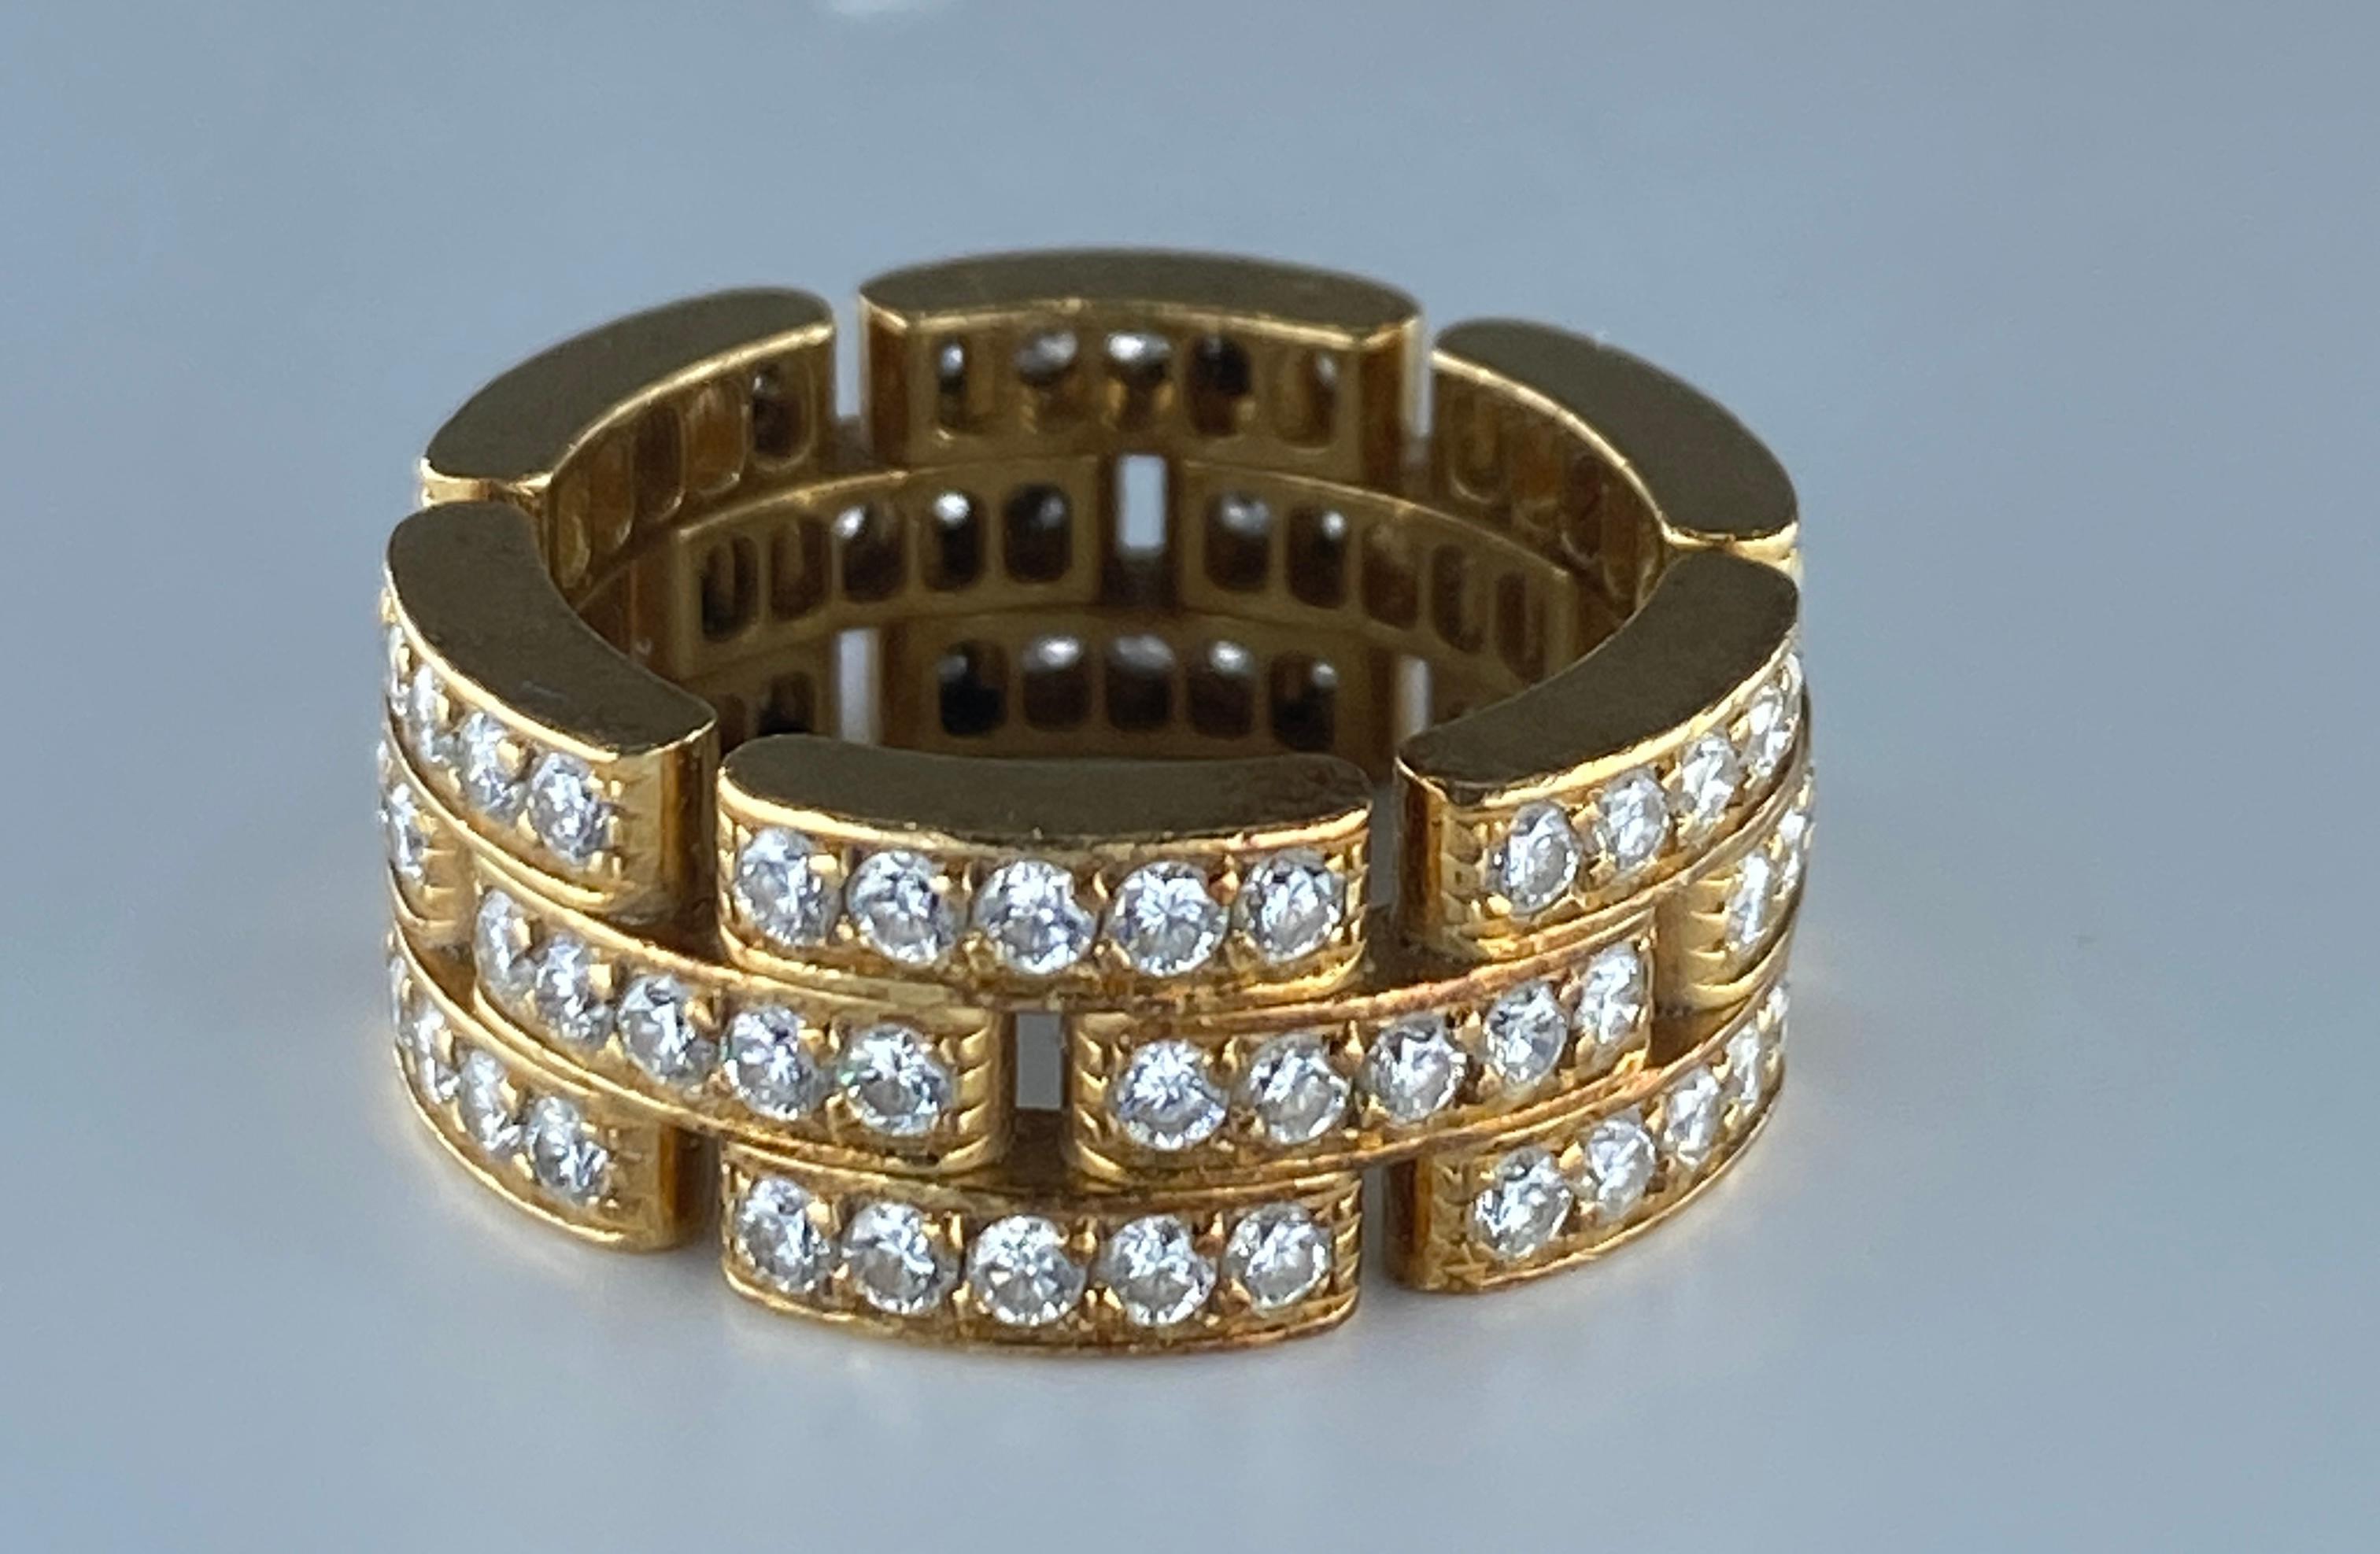 Bague en or jaune 18 carats de modèle : maillons panthère signée de la maison Cartier (numérotée et poinçonnée). Elle est composée de trois rangs de maillons sertis de 90 diamants pour un total de 1,40 carat environ .Parfait état.
Poids : 9,40